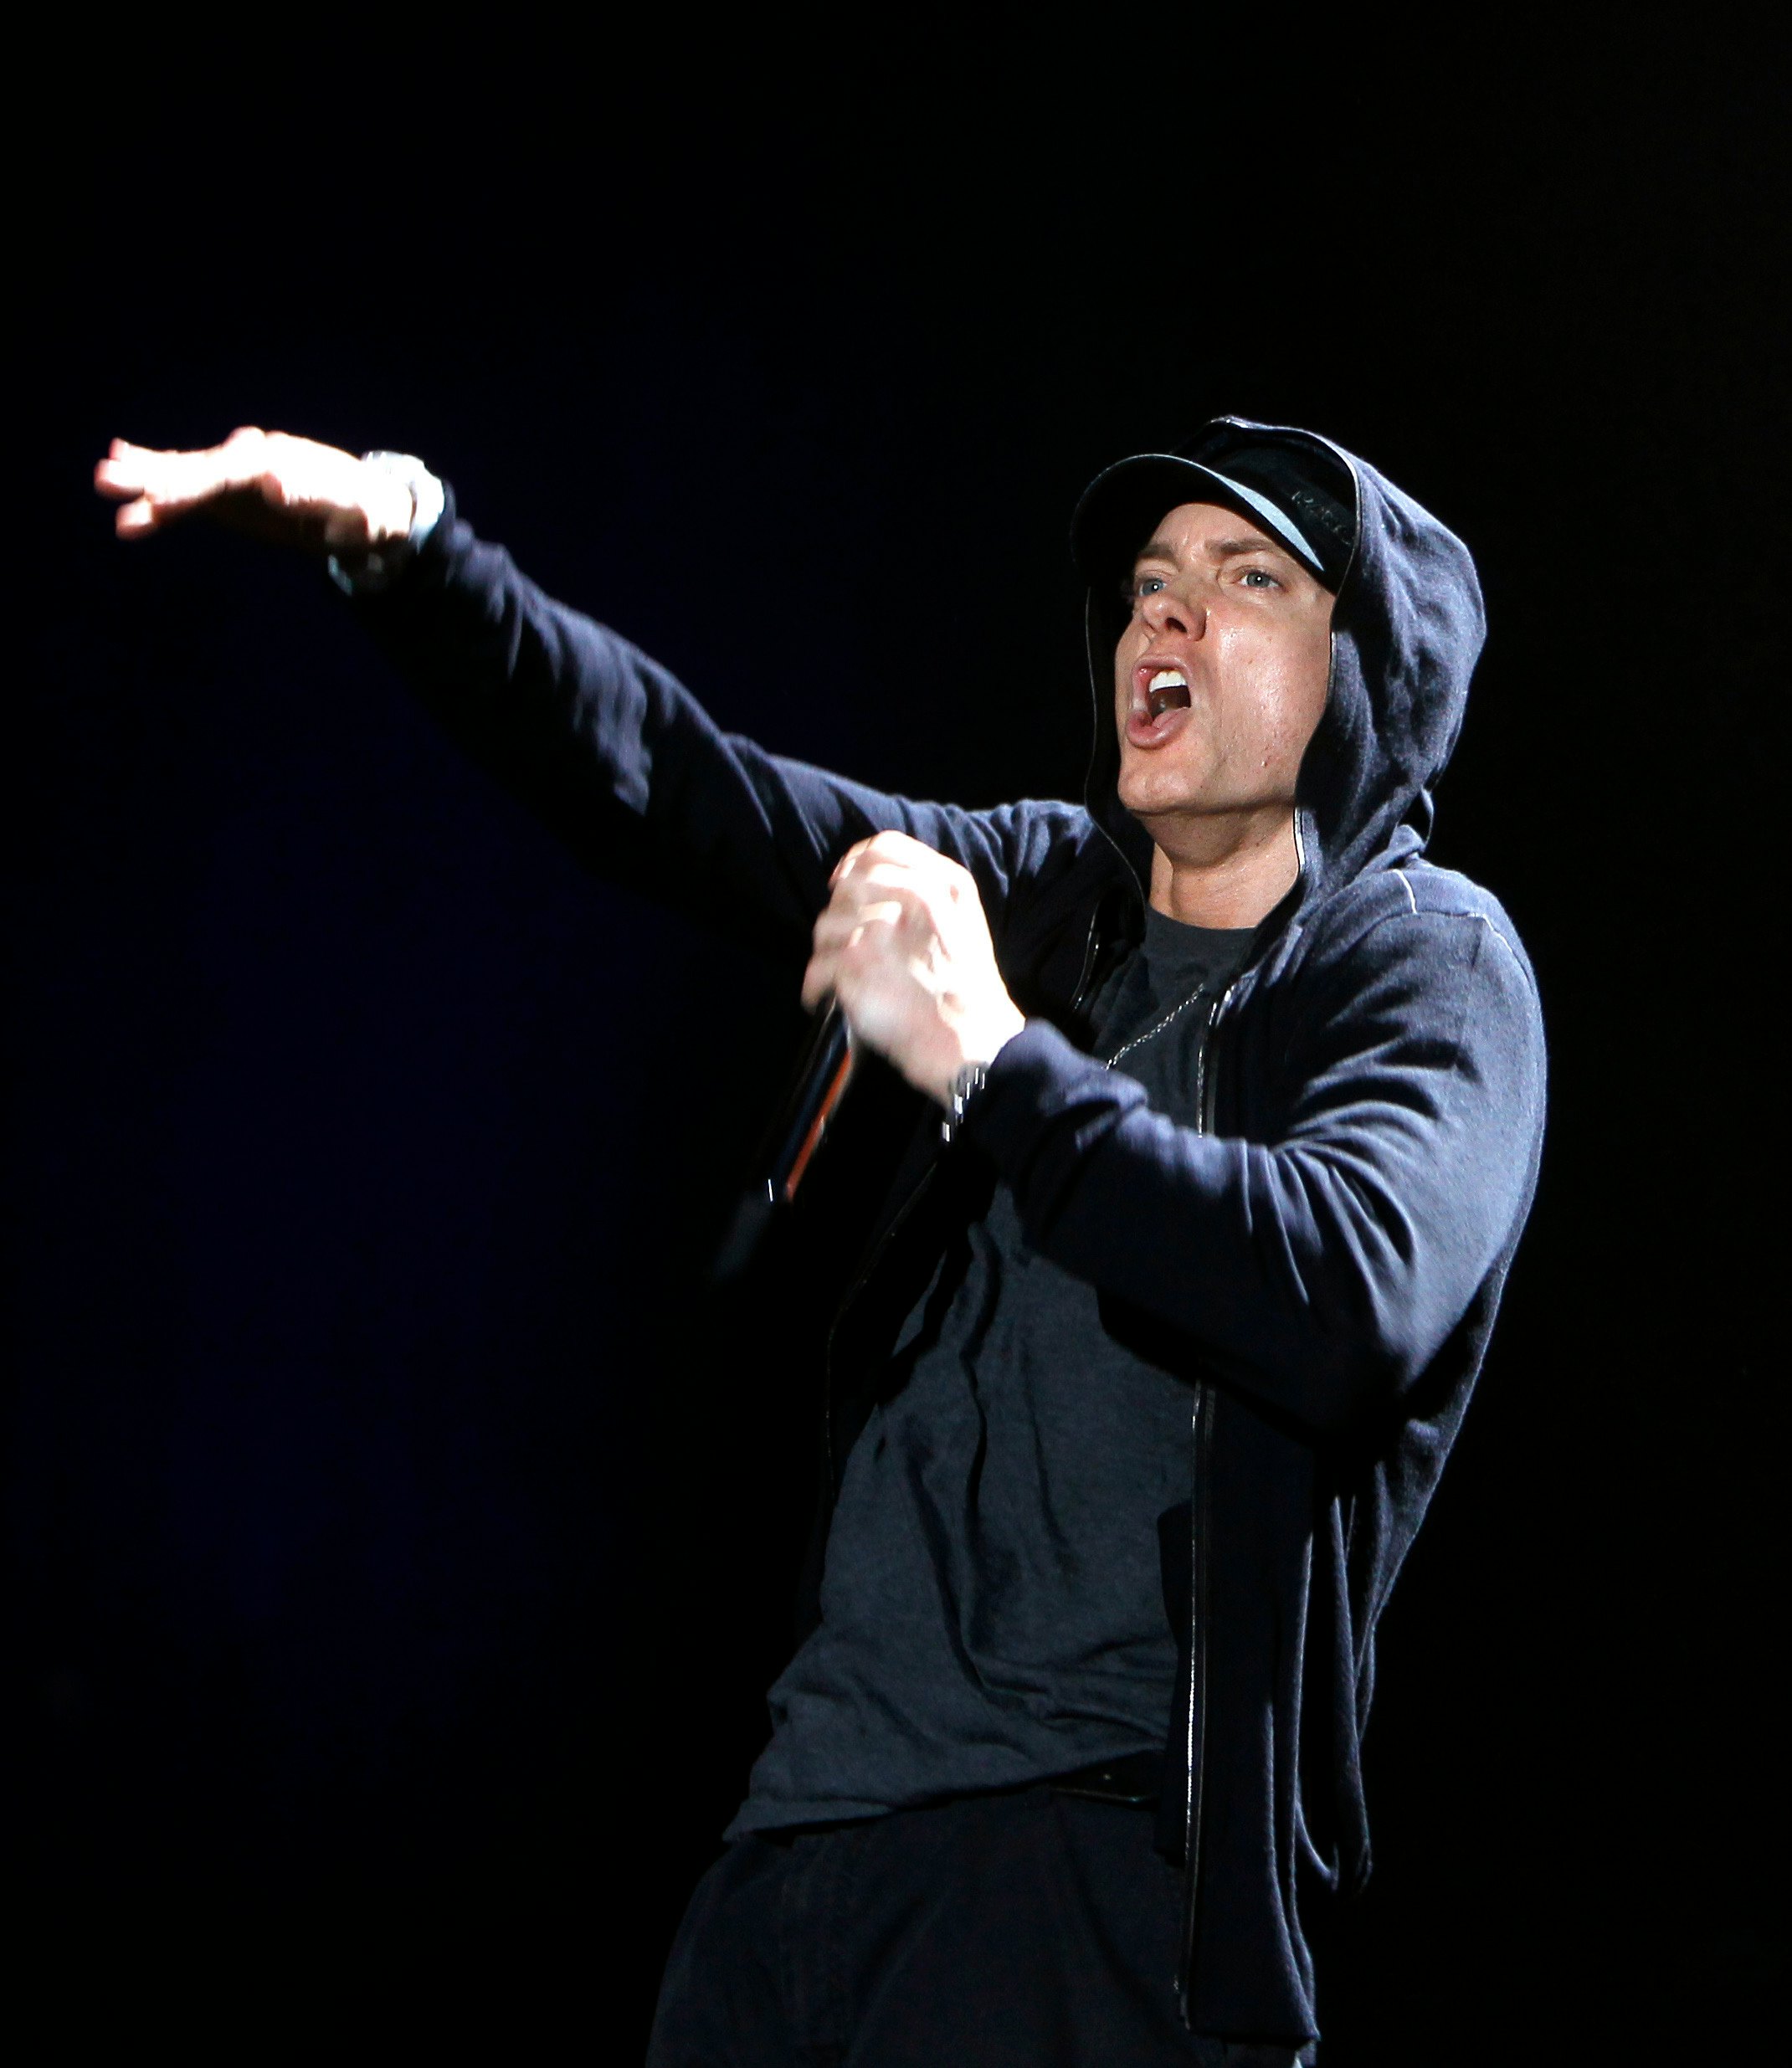 Eminem Asshole